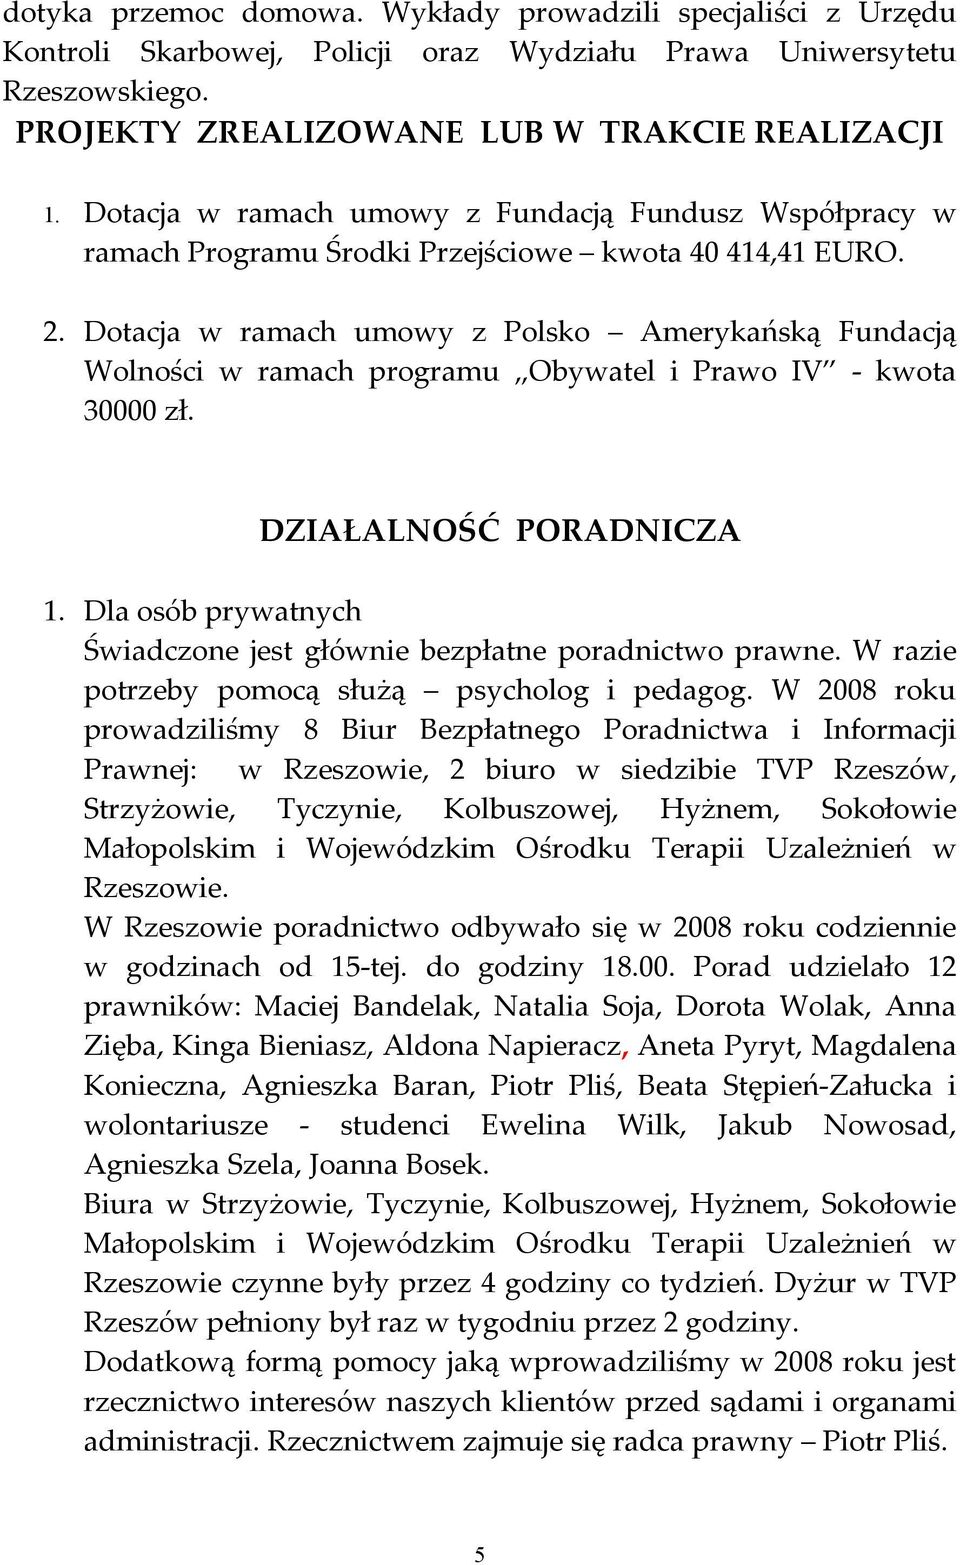 Dotacja w ramach umowy z Polsko Amerykańską Fundacją Wolności w ramach programu Obywatel i Prawo IV - kwota 30000 zł. DZIAŁALNOŚĆ PORADNICZA 1.